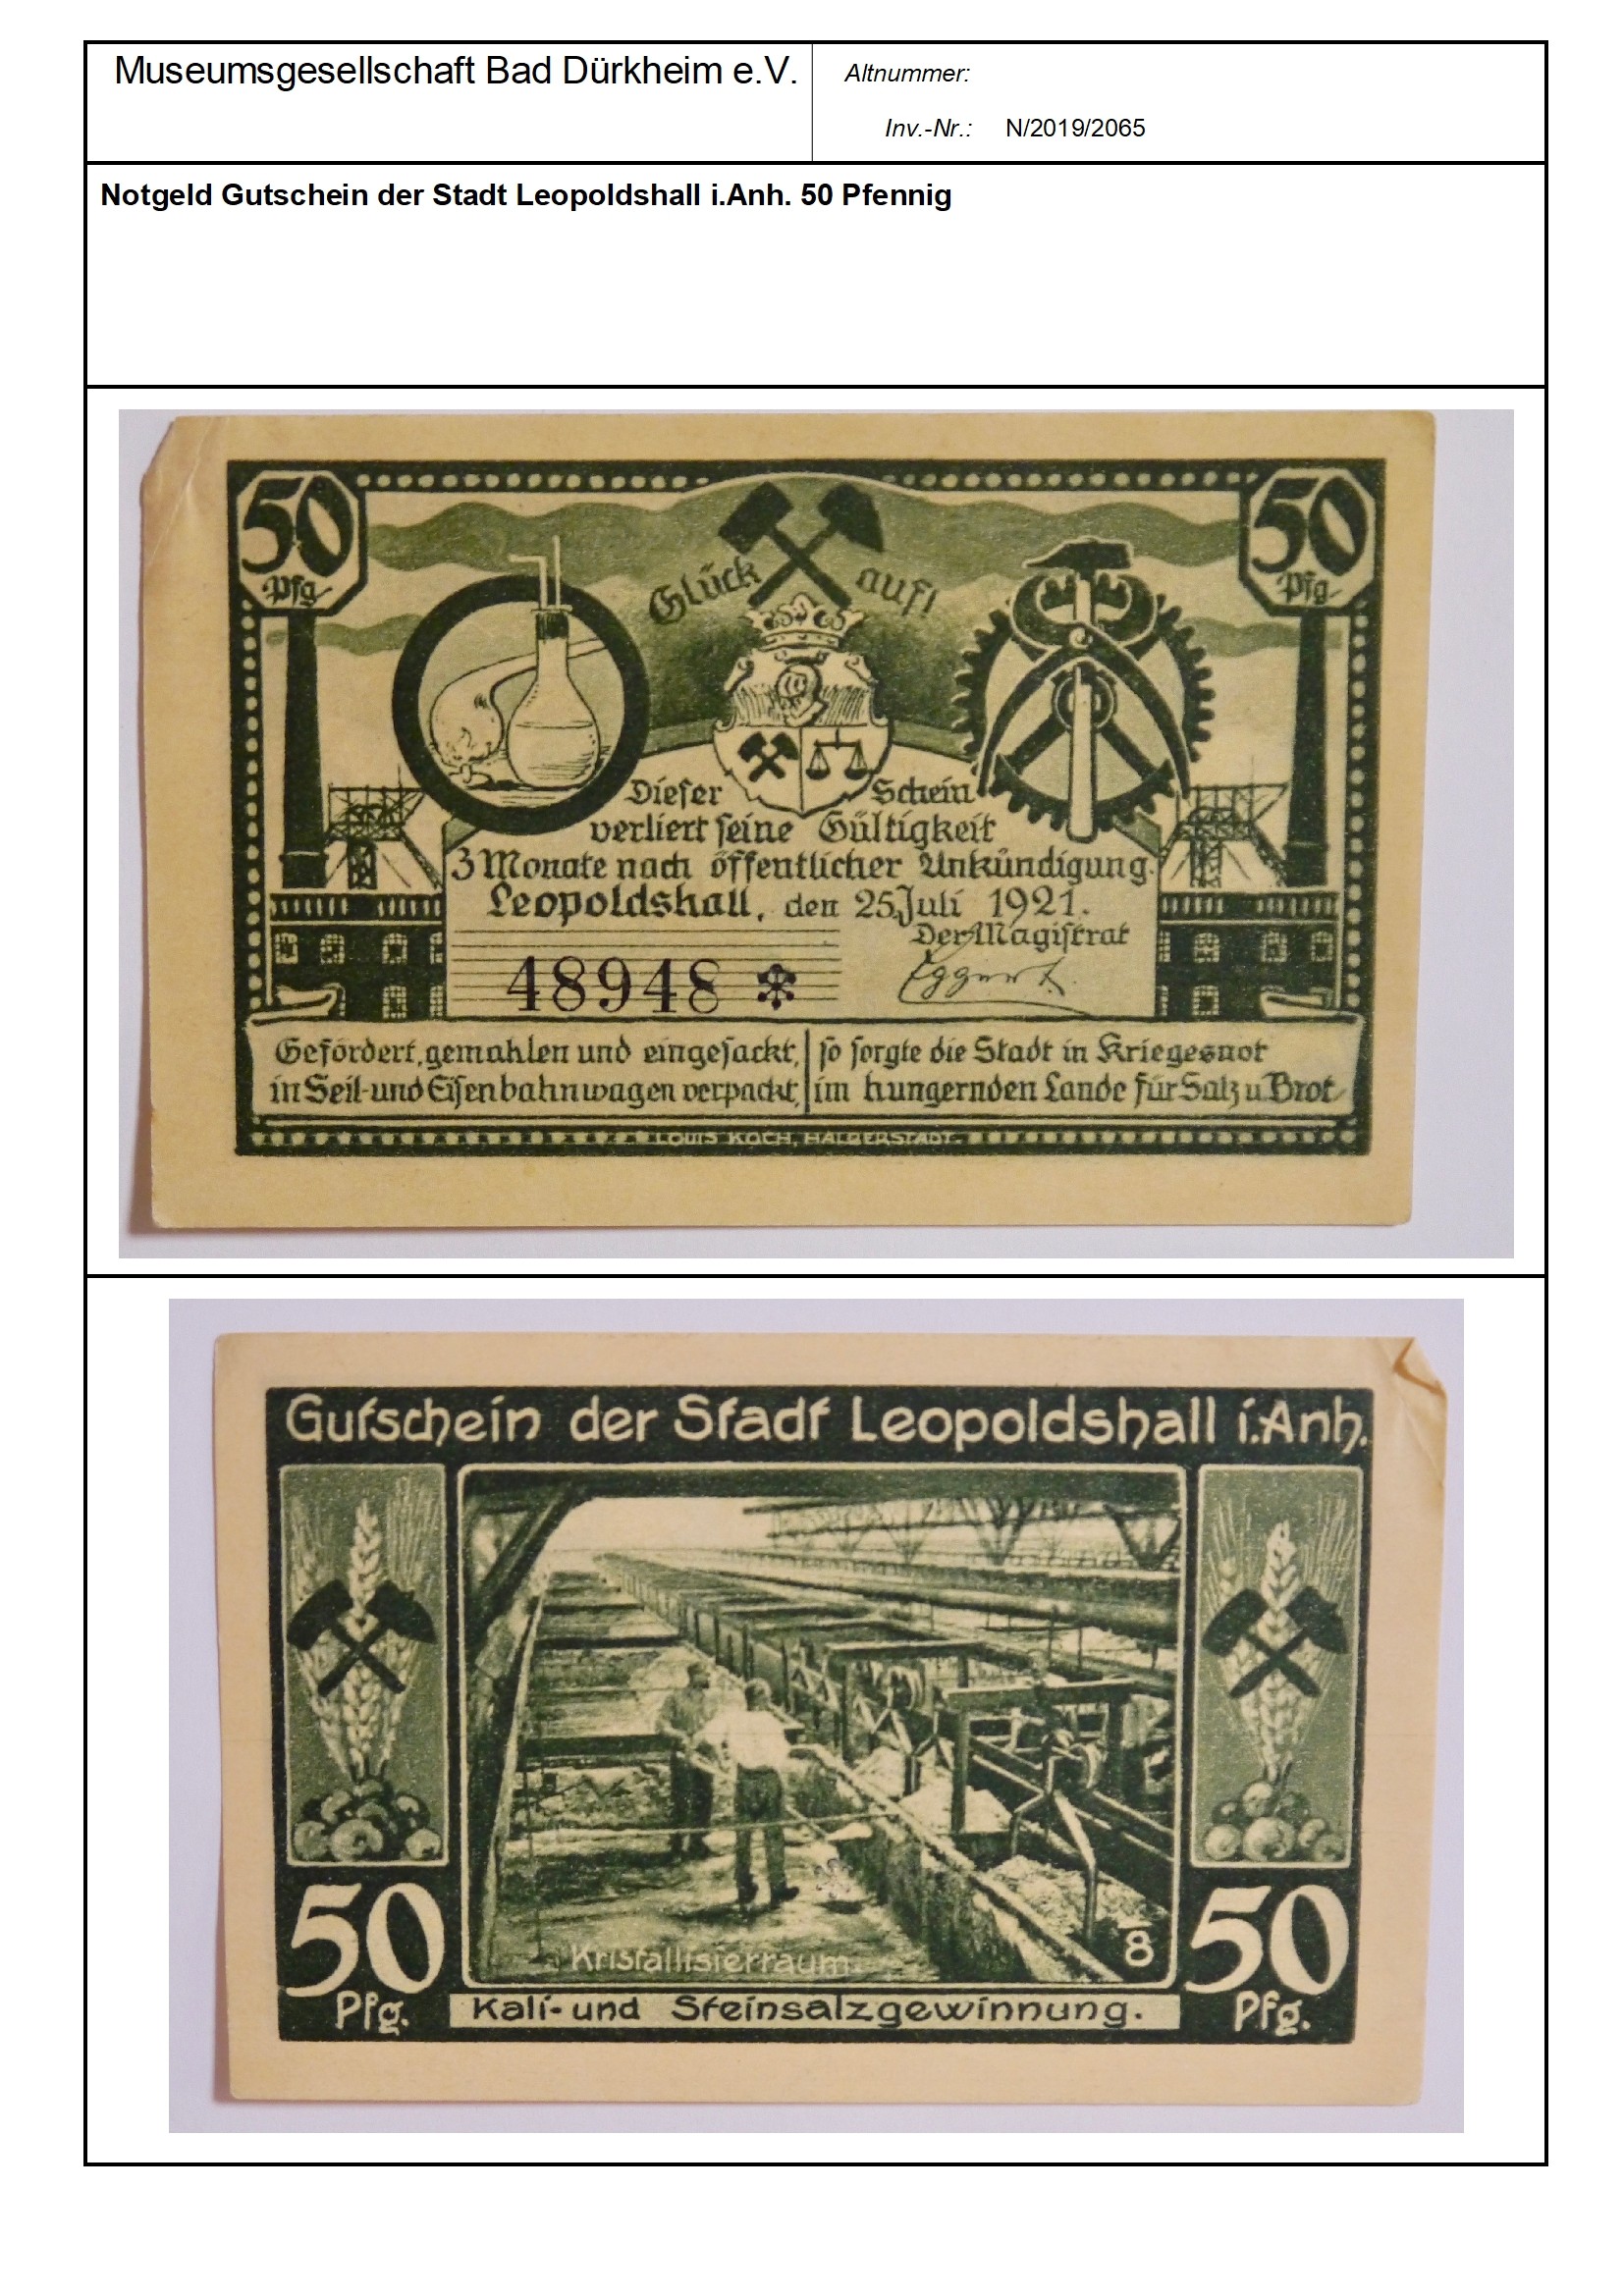 Notgeld Gutschein der Stadt Leopoldshall i.Anh. 50 Pfennig
Serien-Nummer: 48948* (Museumsgesellschaft Bad Dürkheim e.V. CC BY-NC-SA)